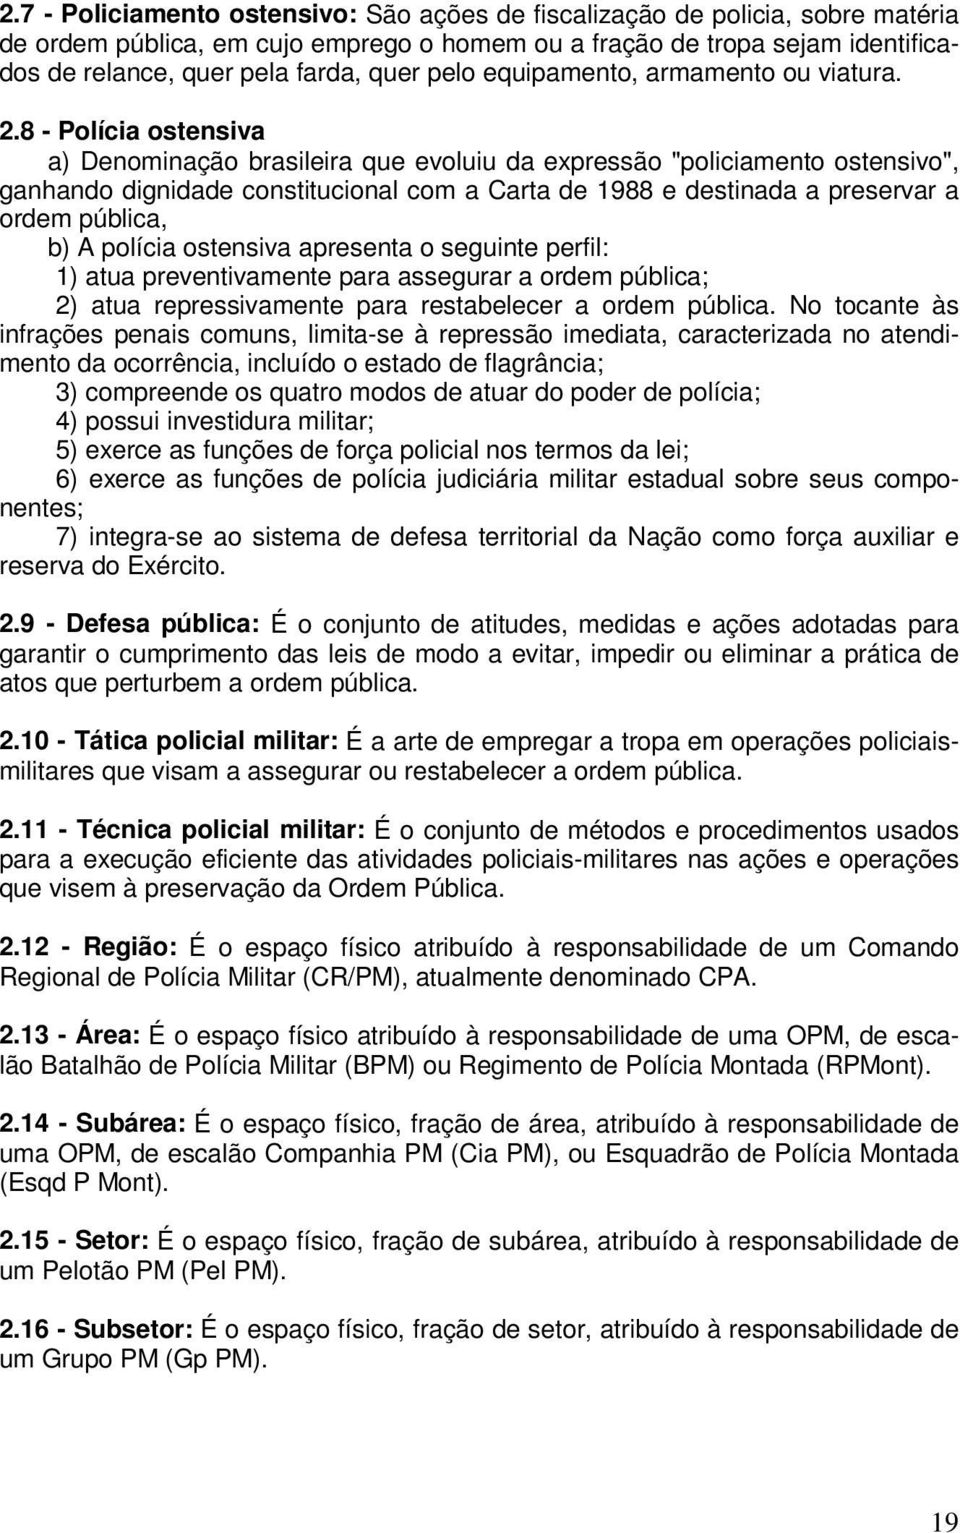 8 - Polícia ostensiva a) Denominação brasileira que evoluiu da expressão "policiamento ostensivo", ganhando dignidade constitucional com a Carta de 1988 e destinada a preservar a ordem pública, b) A